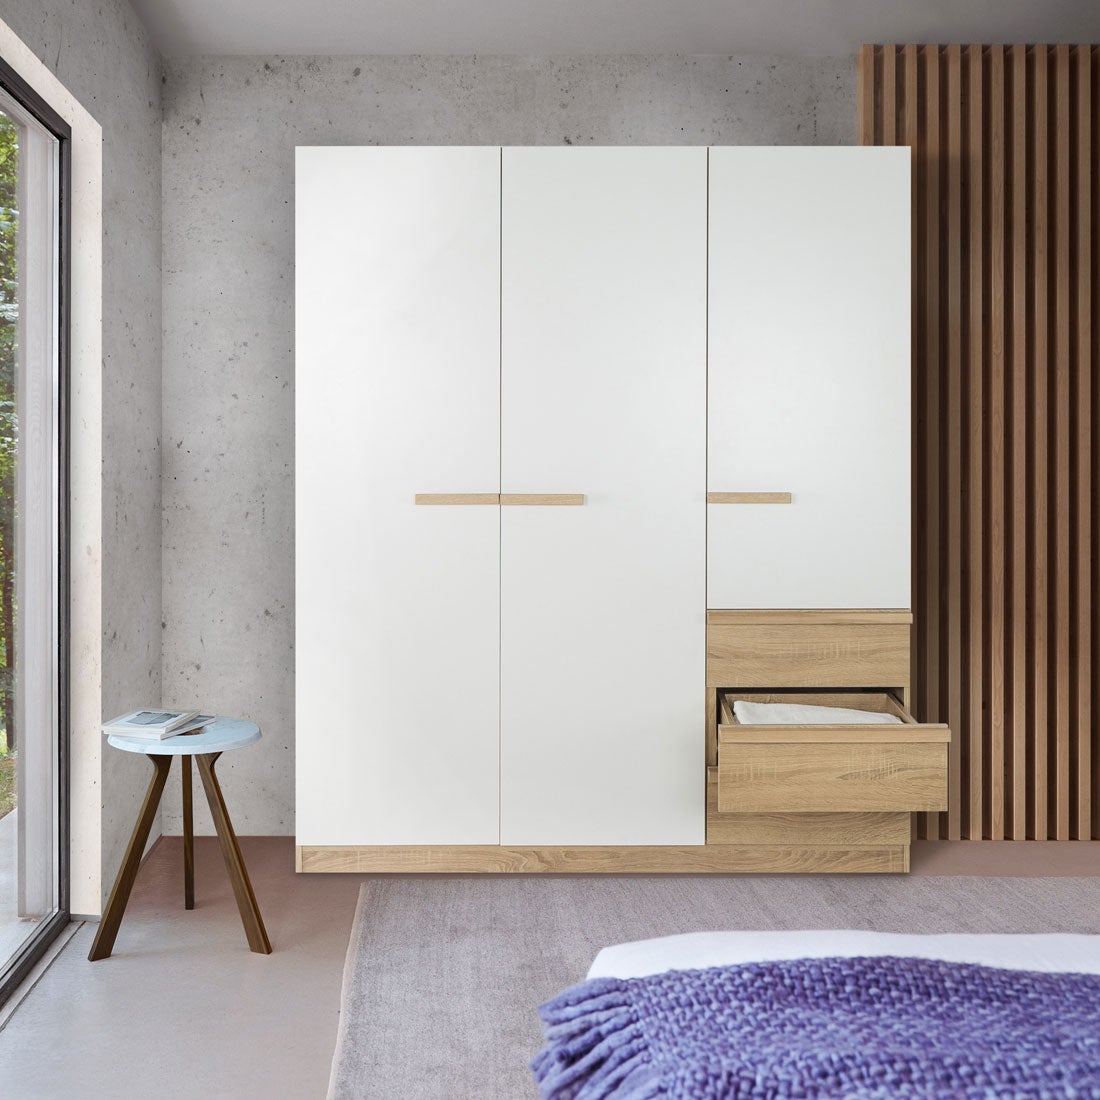 ชุดห้องนอน ตู้เสื้อผ้าบานเปิด รุ่น Hanz สีสีโอ๊ค-SB Design Square